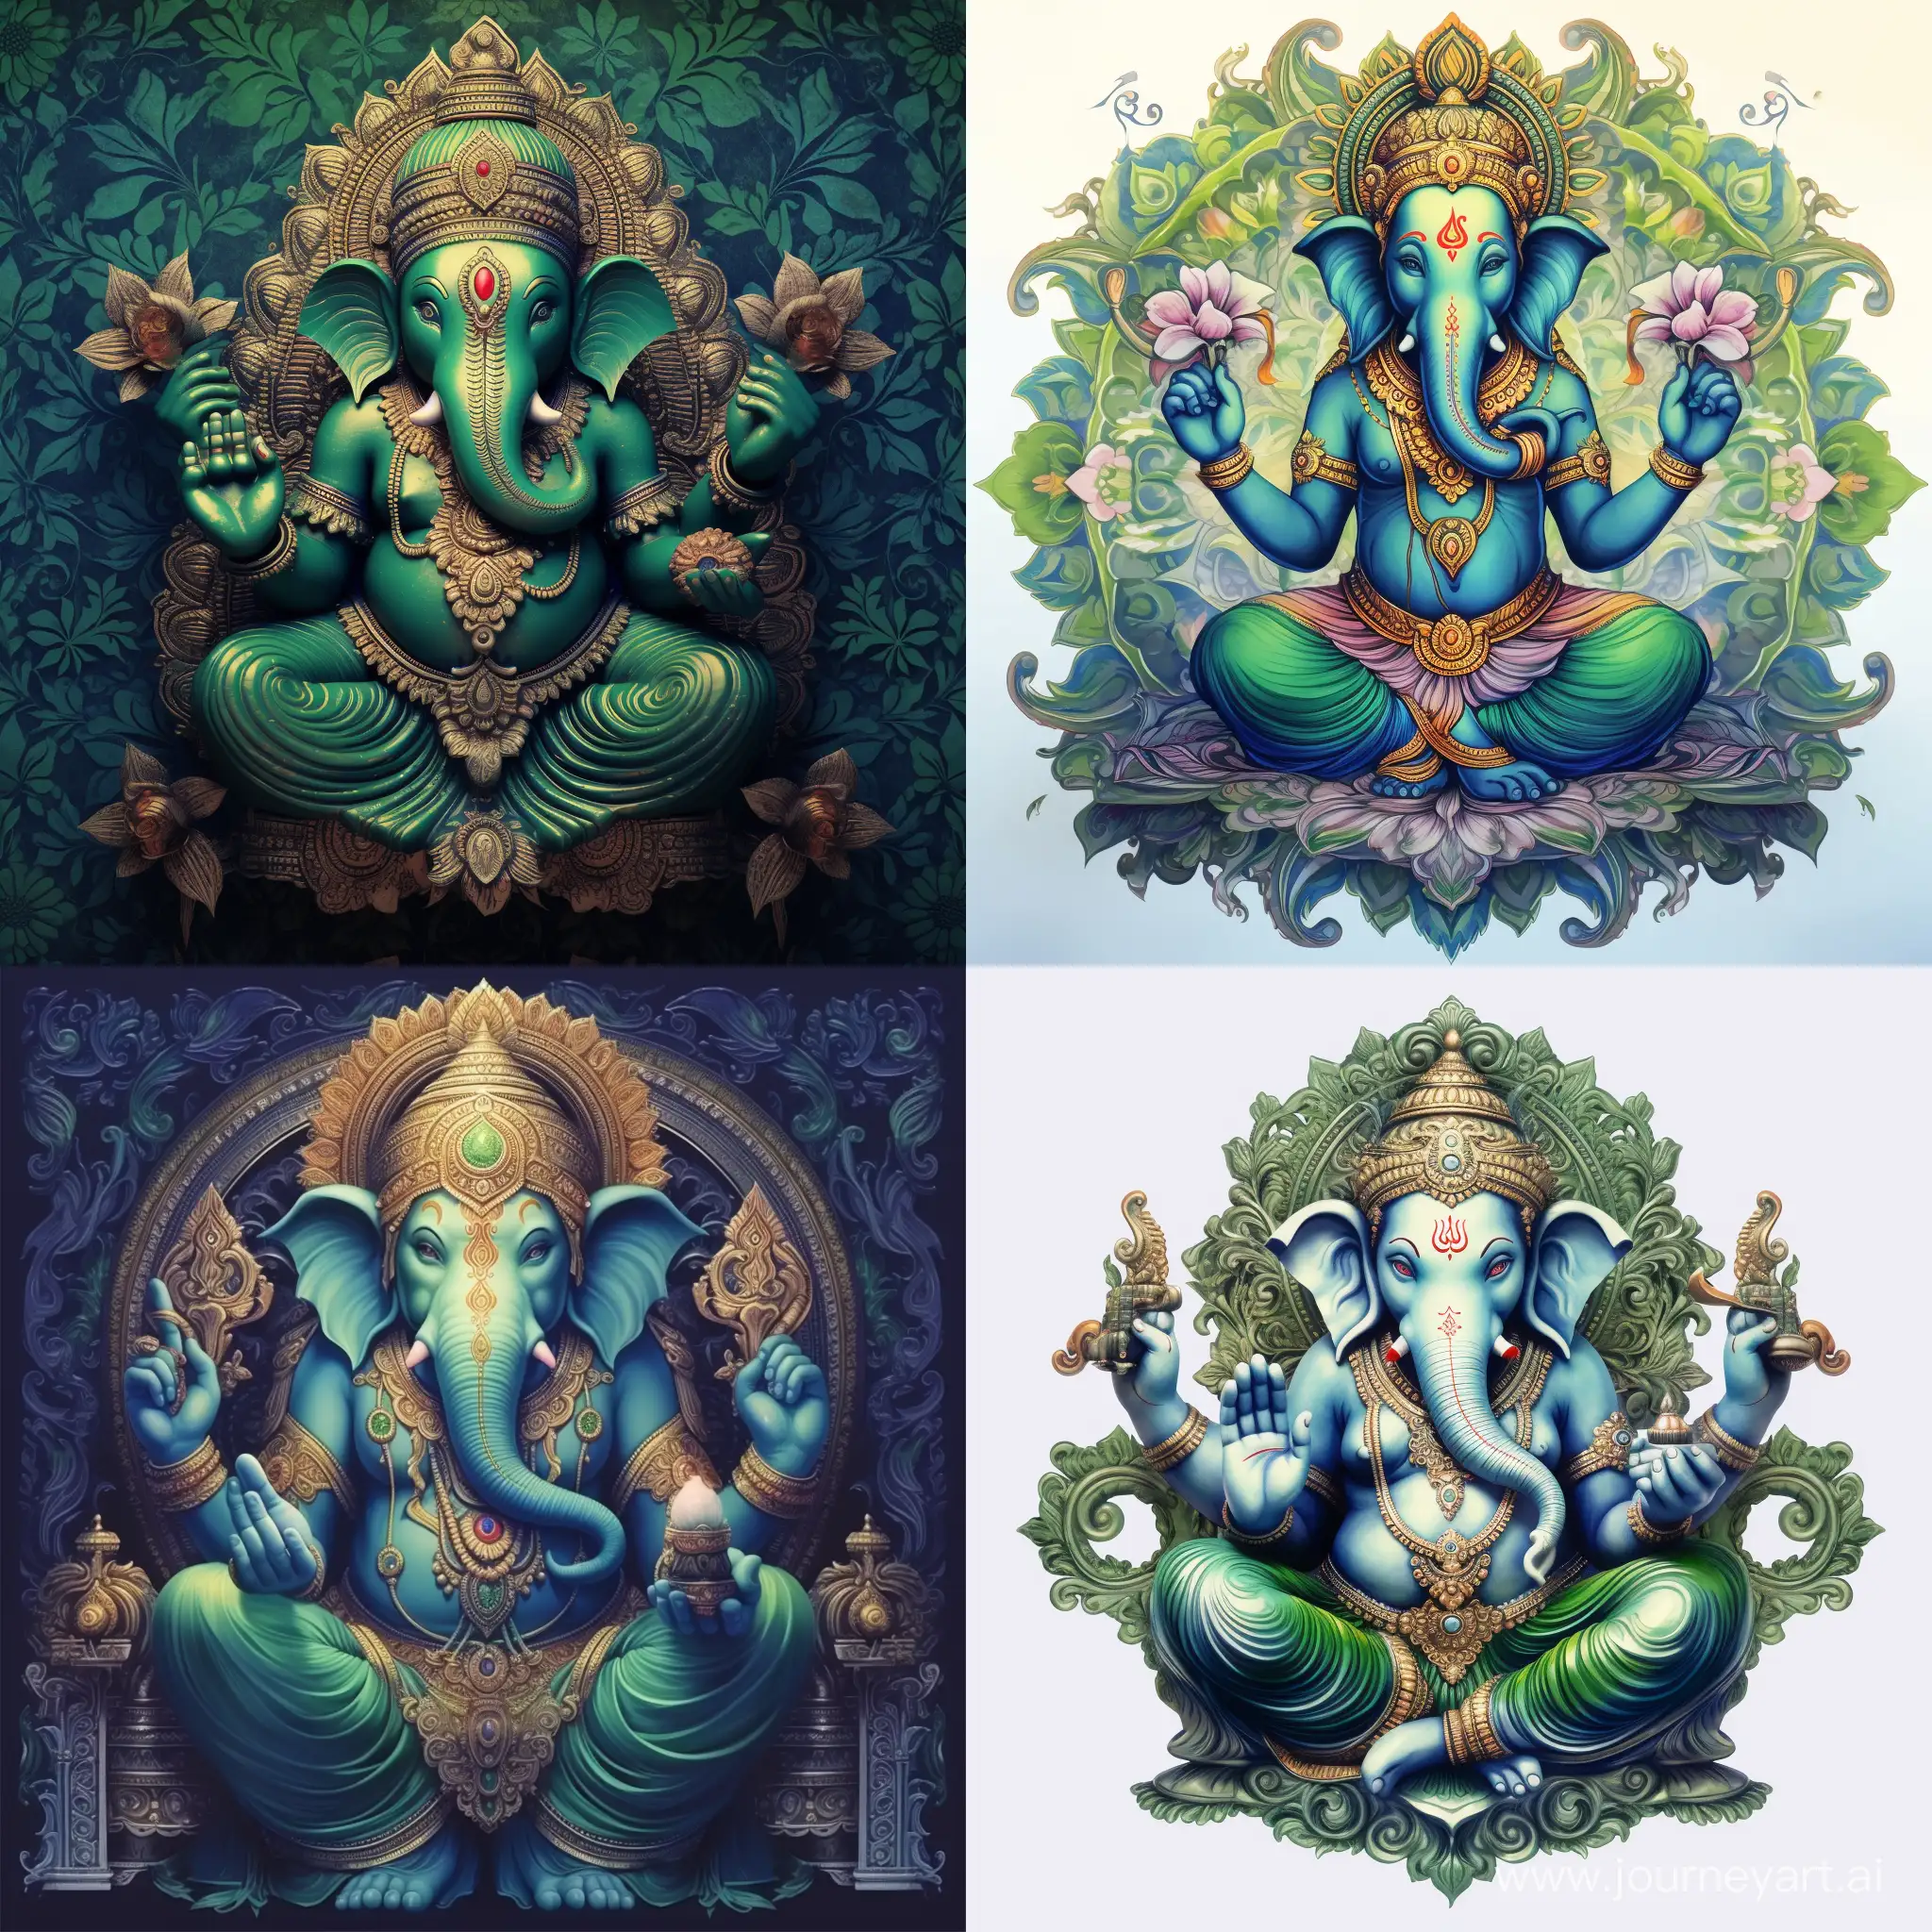 Freundlicher Sitzender schlanker Ganesha, Mandala, grün und blau töne, mehr grün als blau, Hintergrund transparent, kein 3d Bild, 